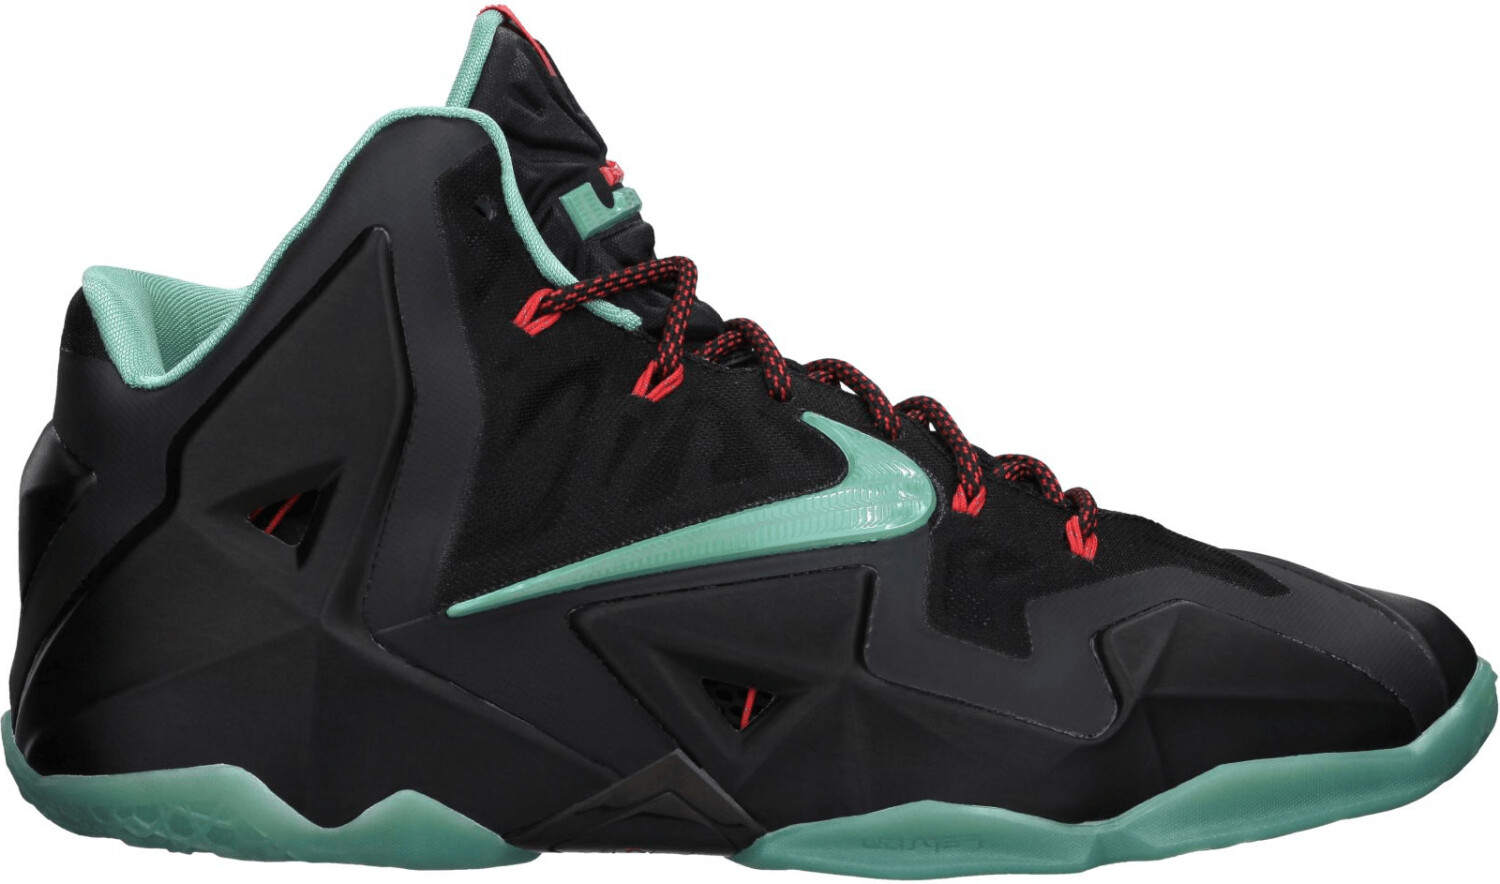 Nike Lebron 11 black/diffused jade/light crimson/jade glaze